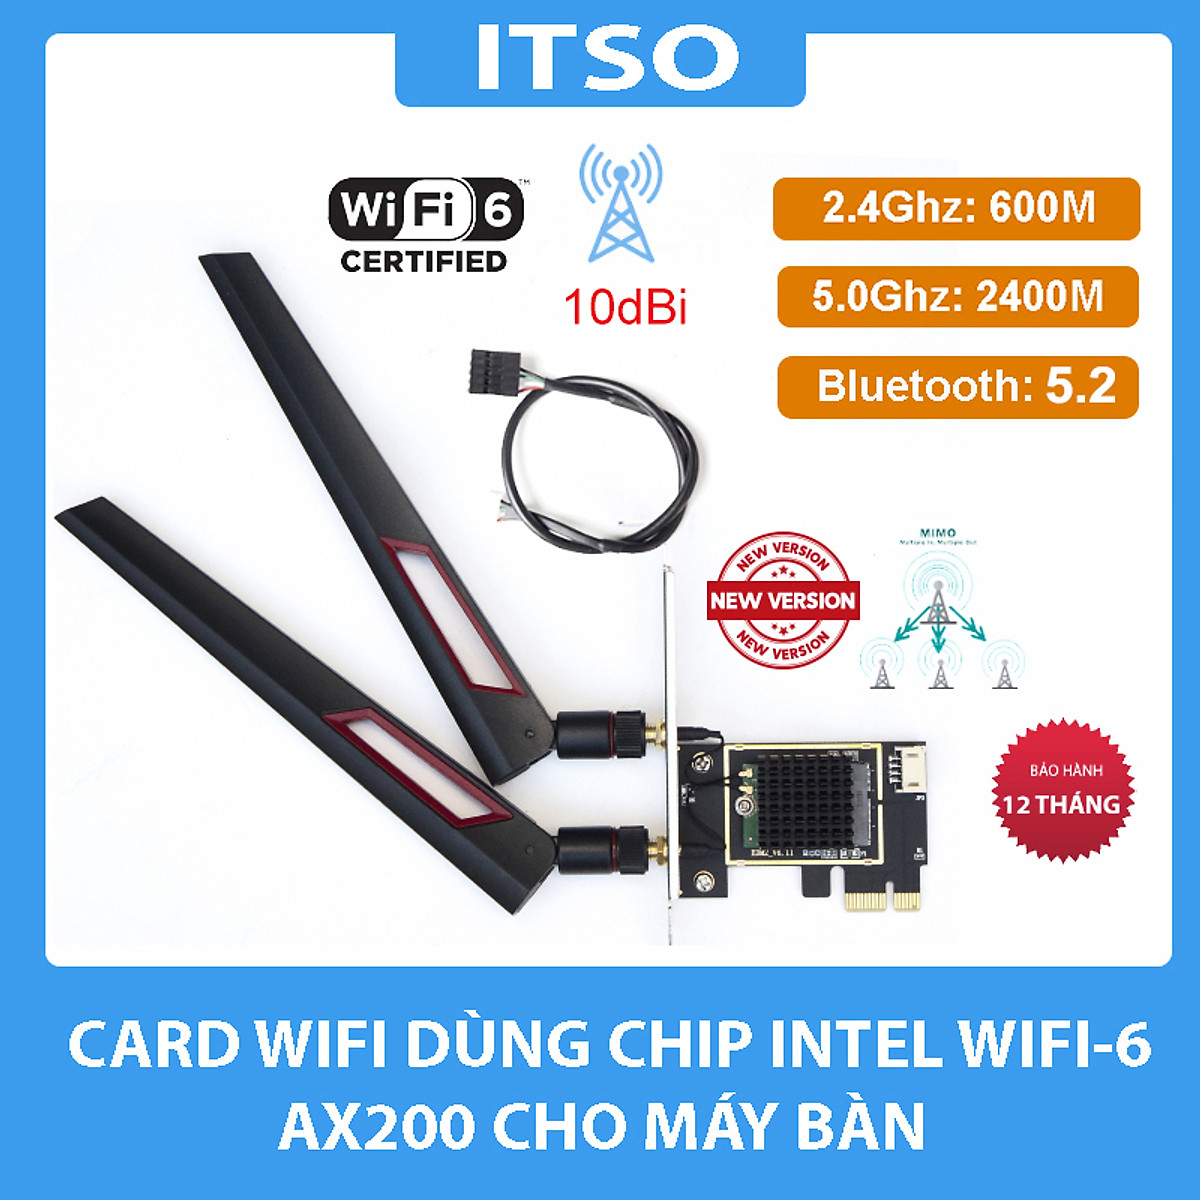 Card WIFI Bluetooth cho PC sử dụng chip Intel WIFI 6 AX200 khe PCI cho tích hợp Bluetooth 5.0  tốc độ 2400M có tản nhiệt 